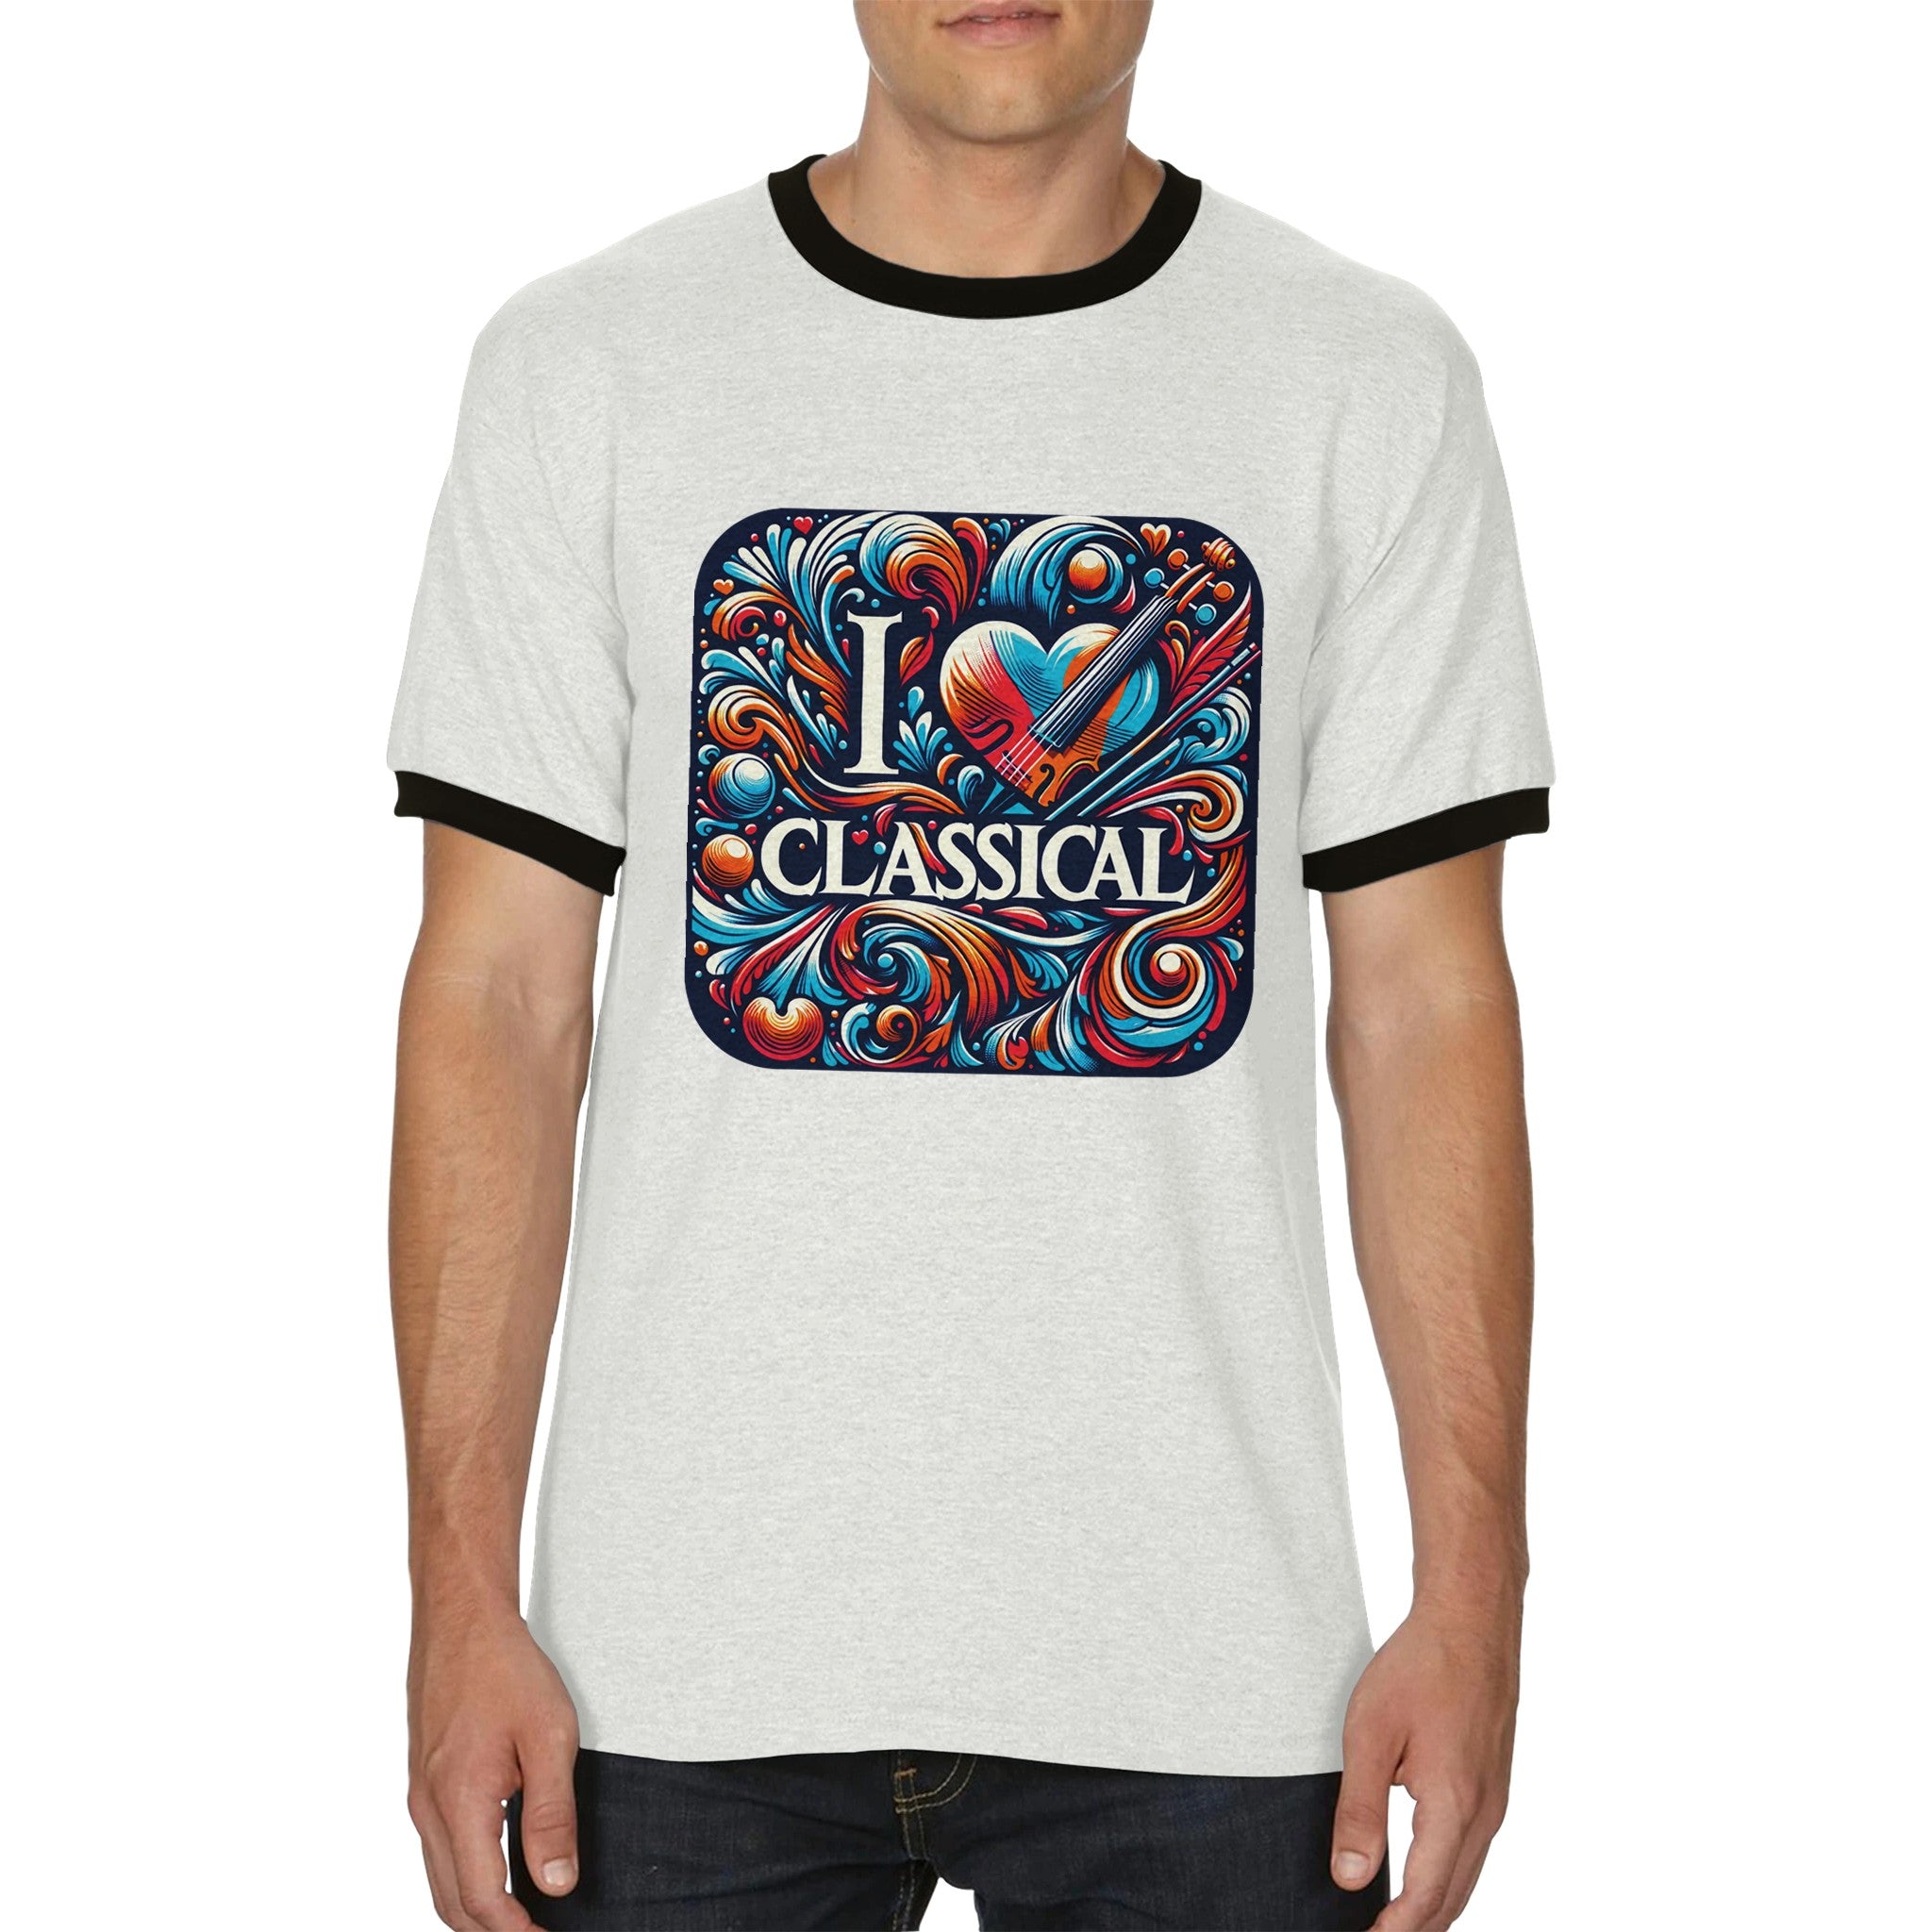 "I LOVE CLASSICAL" Unisex Ringer T-shirt